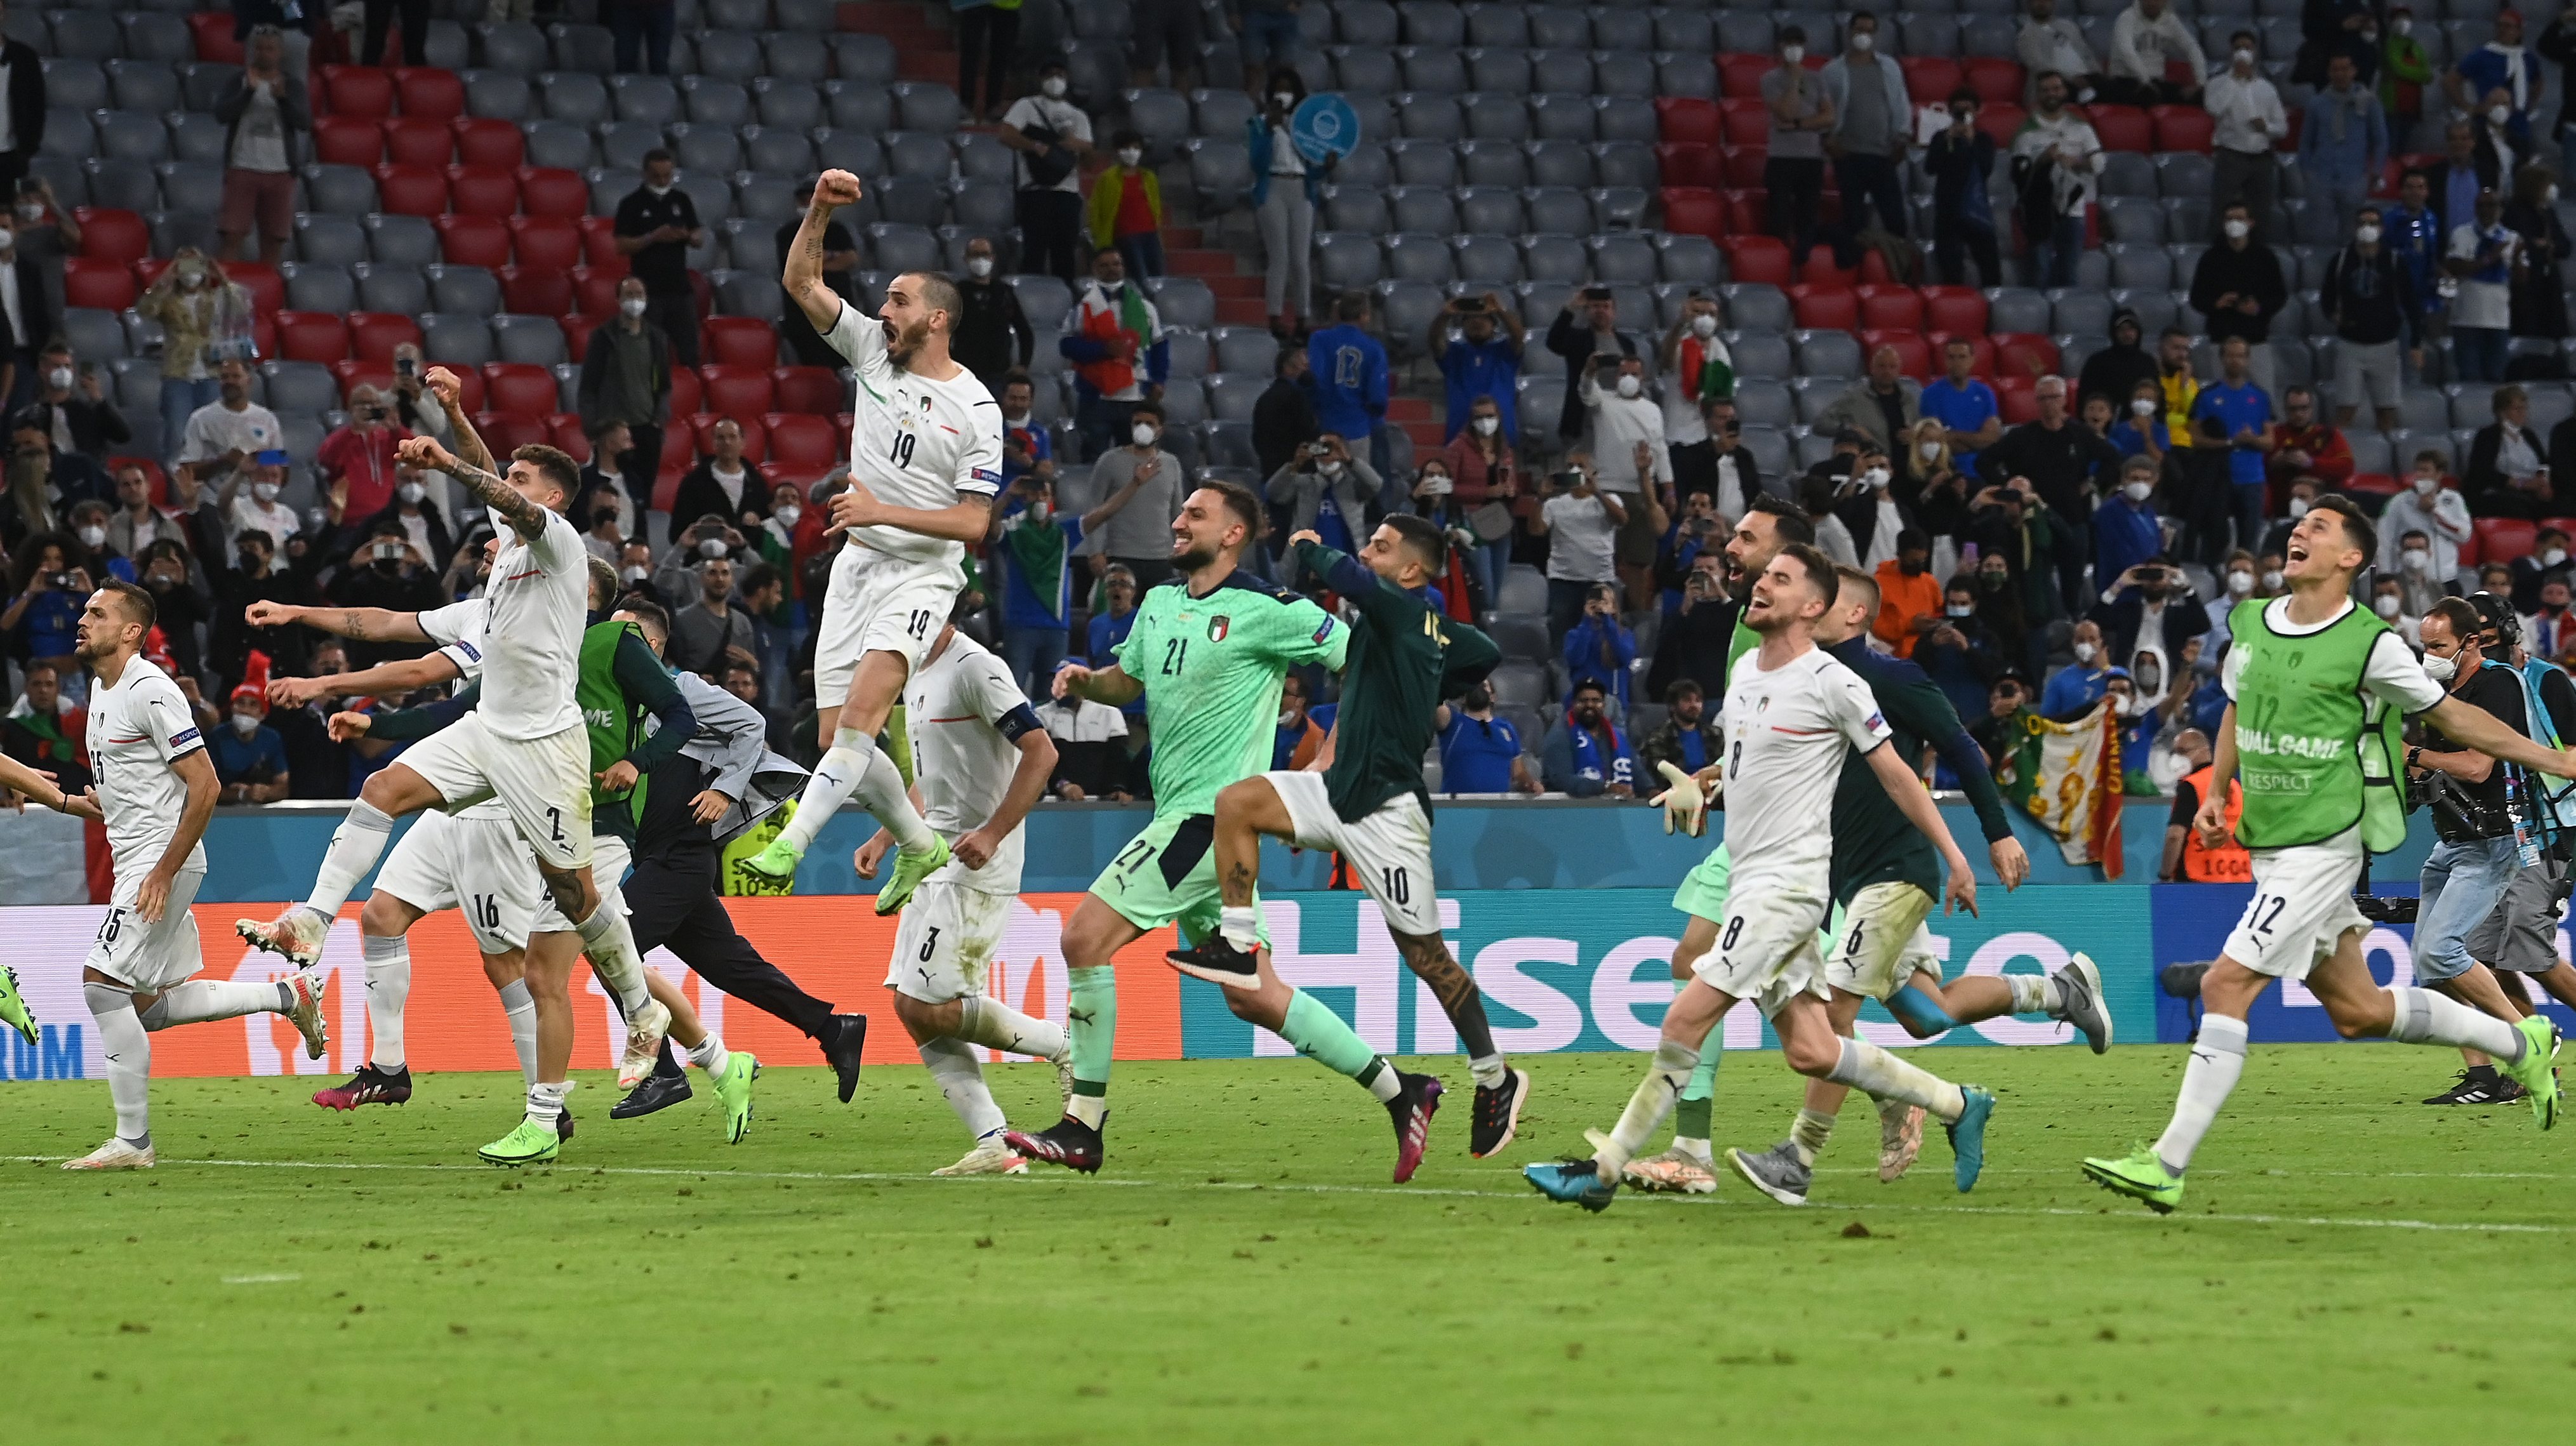 Itália festejou em Munique a quinta vitória neste Europeu, com nove golos marcados e apenas dois sofridos (um de penálti)